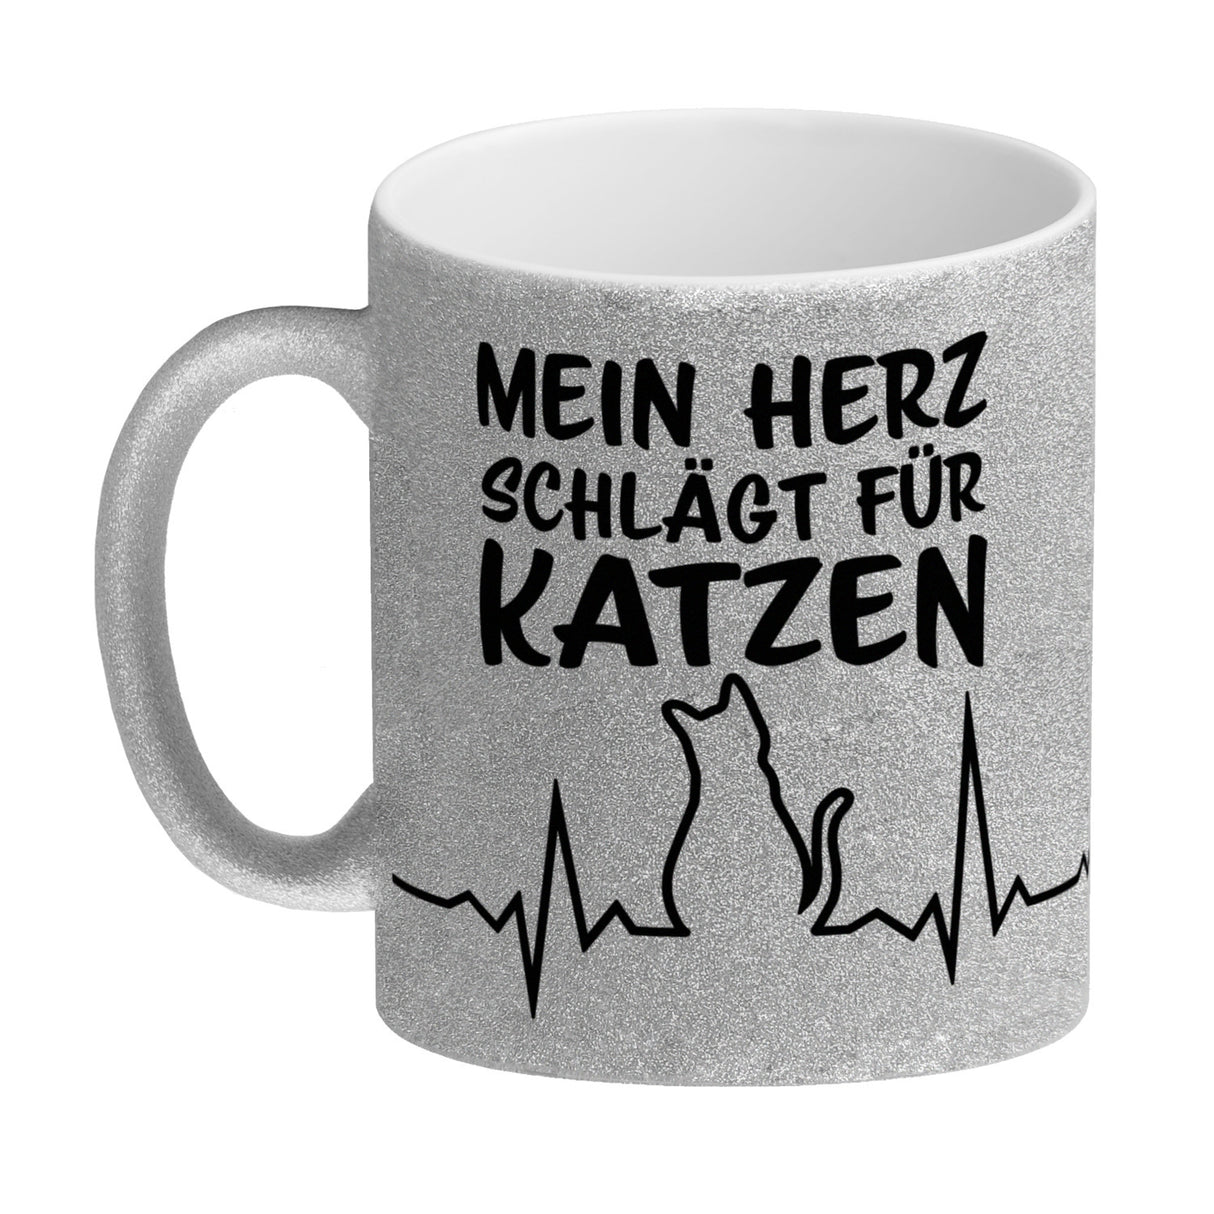 Mein Herz schlägt für Katzen Kaffeebecher mit süßem EKG Motiv